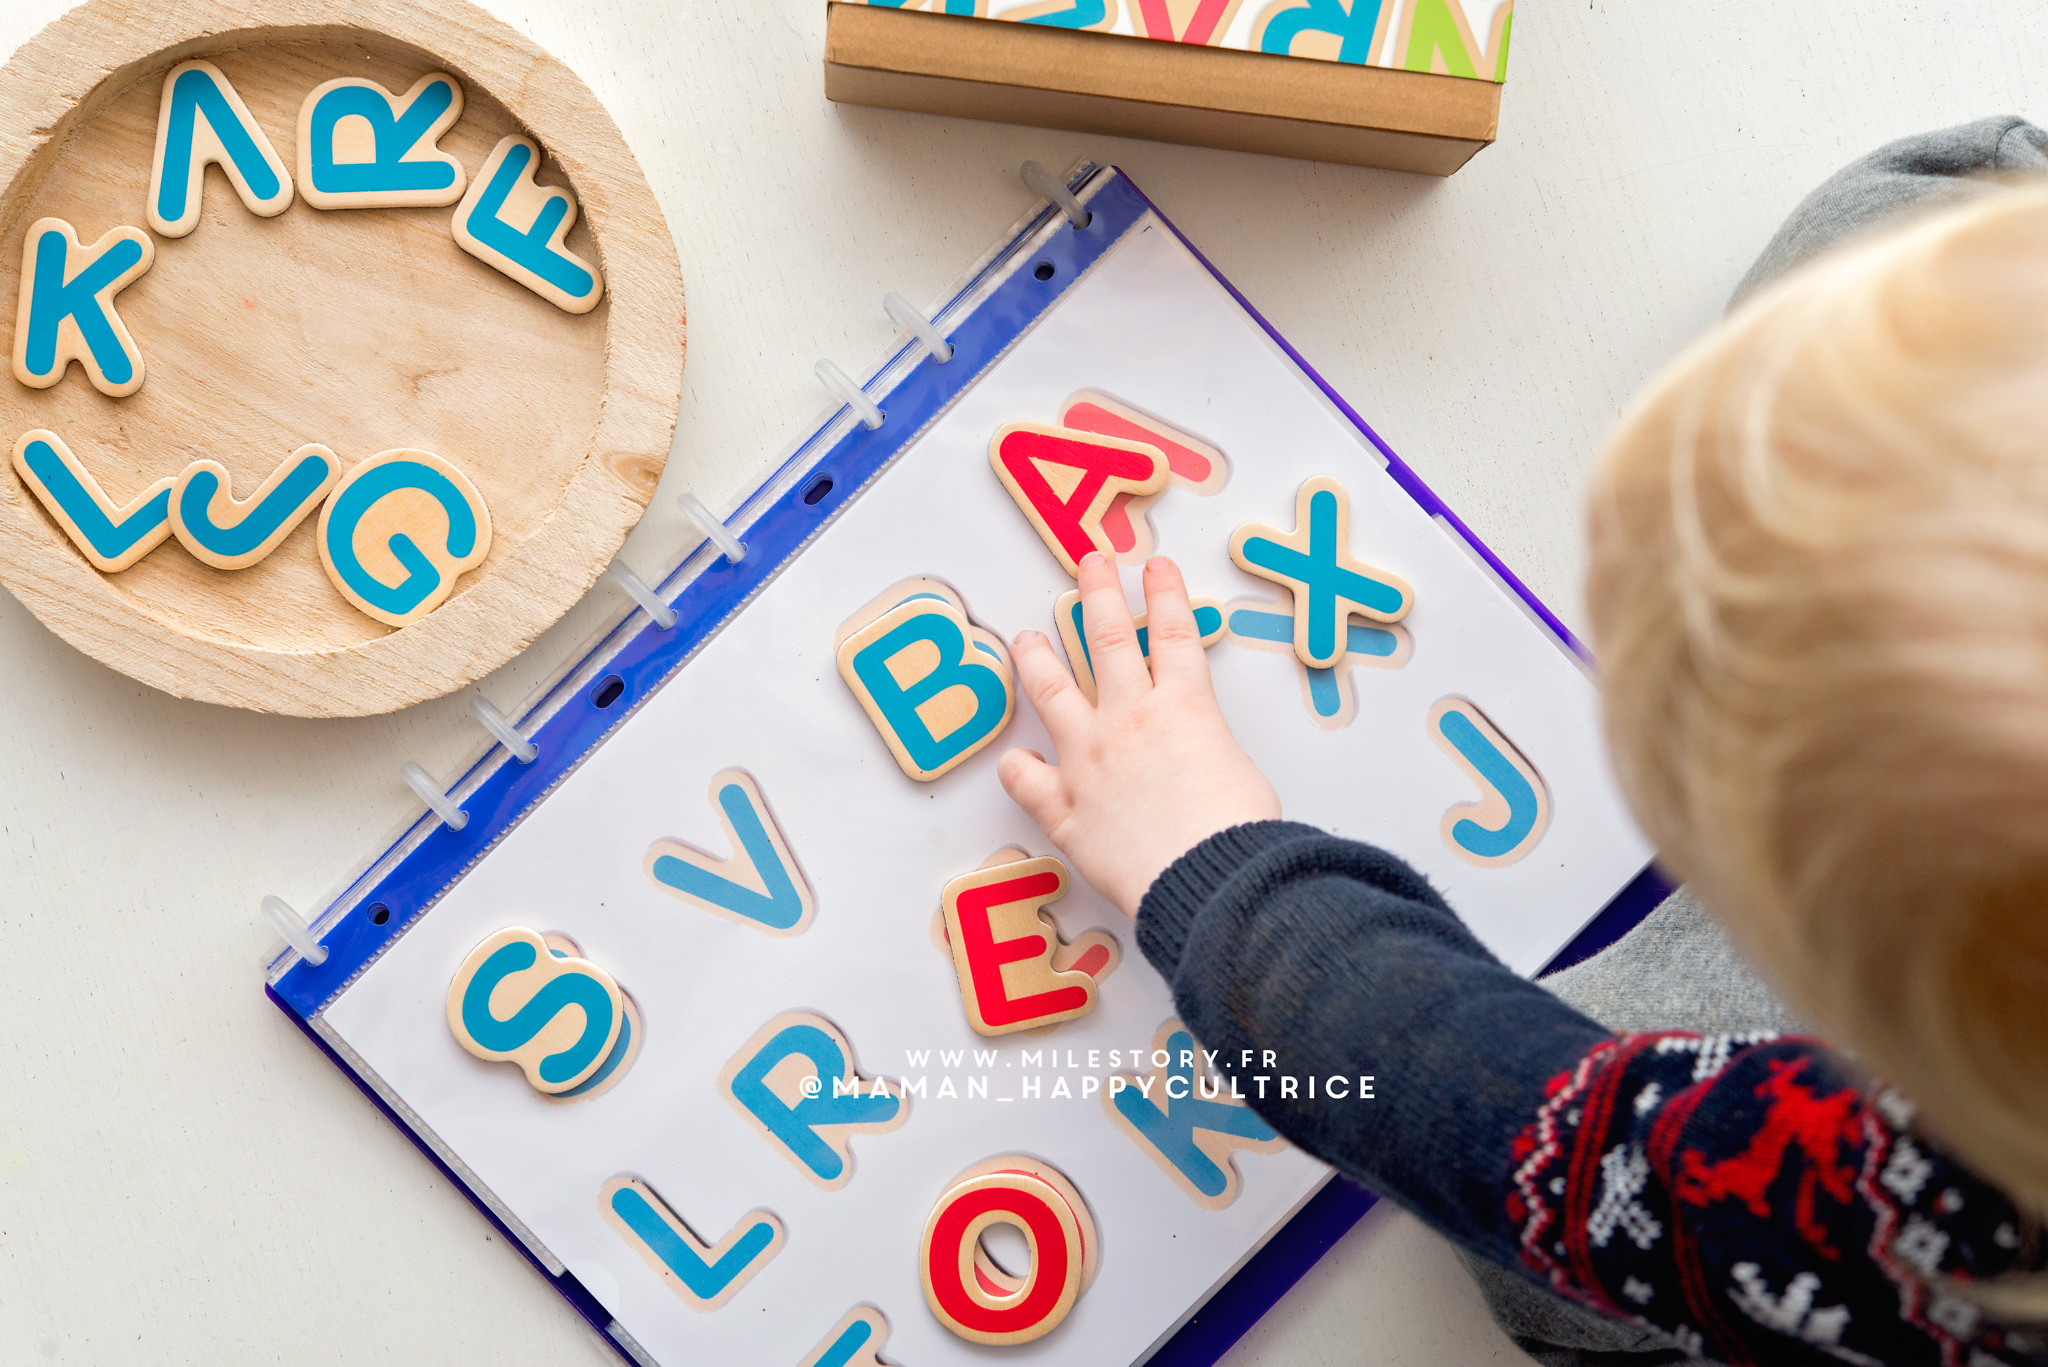 Lettres magnétiques - Apprendre les lettres - Matériel Montessori